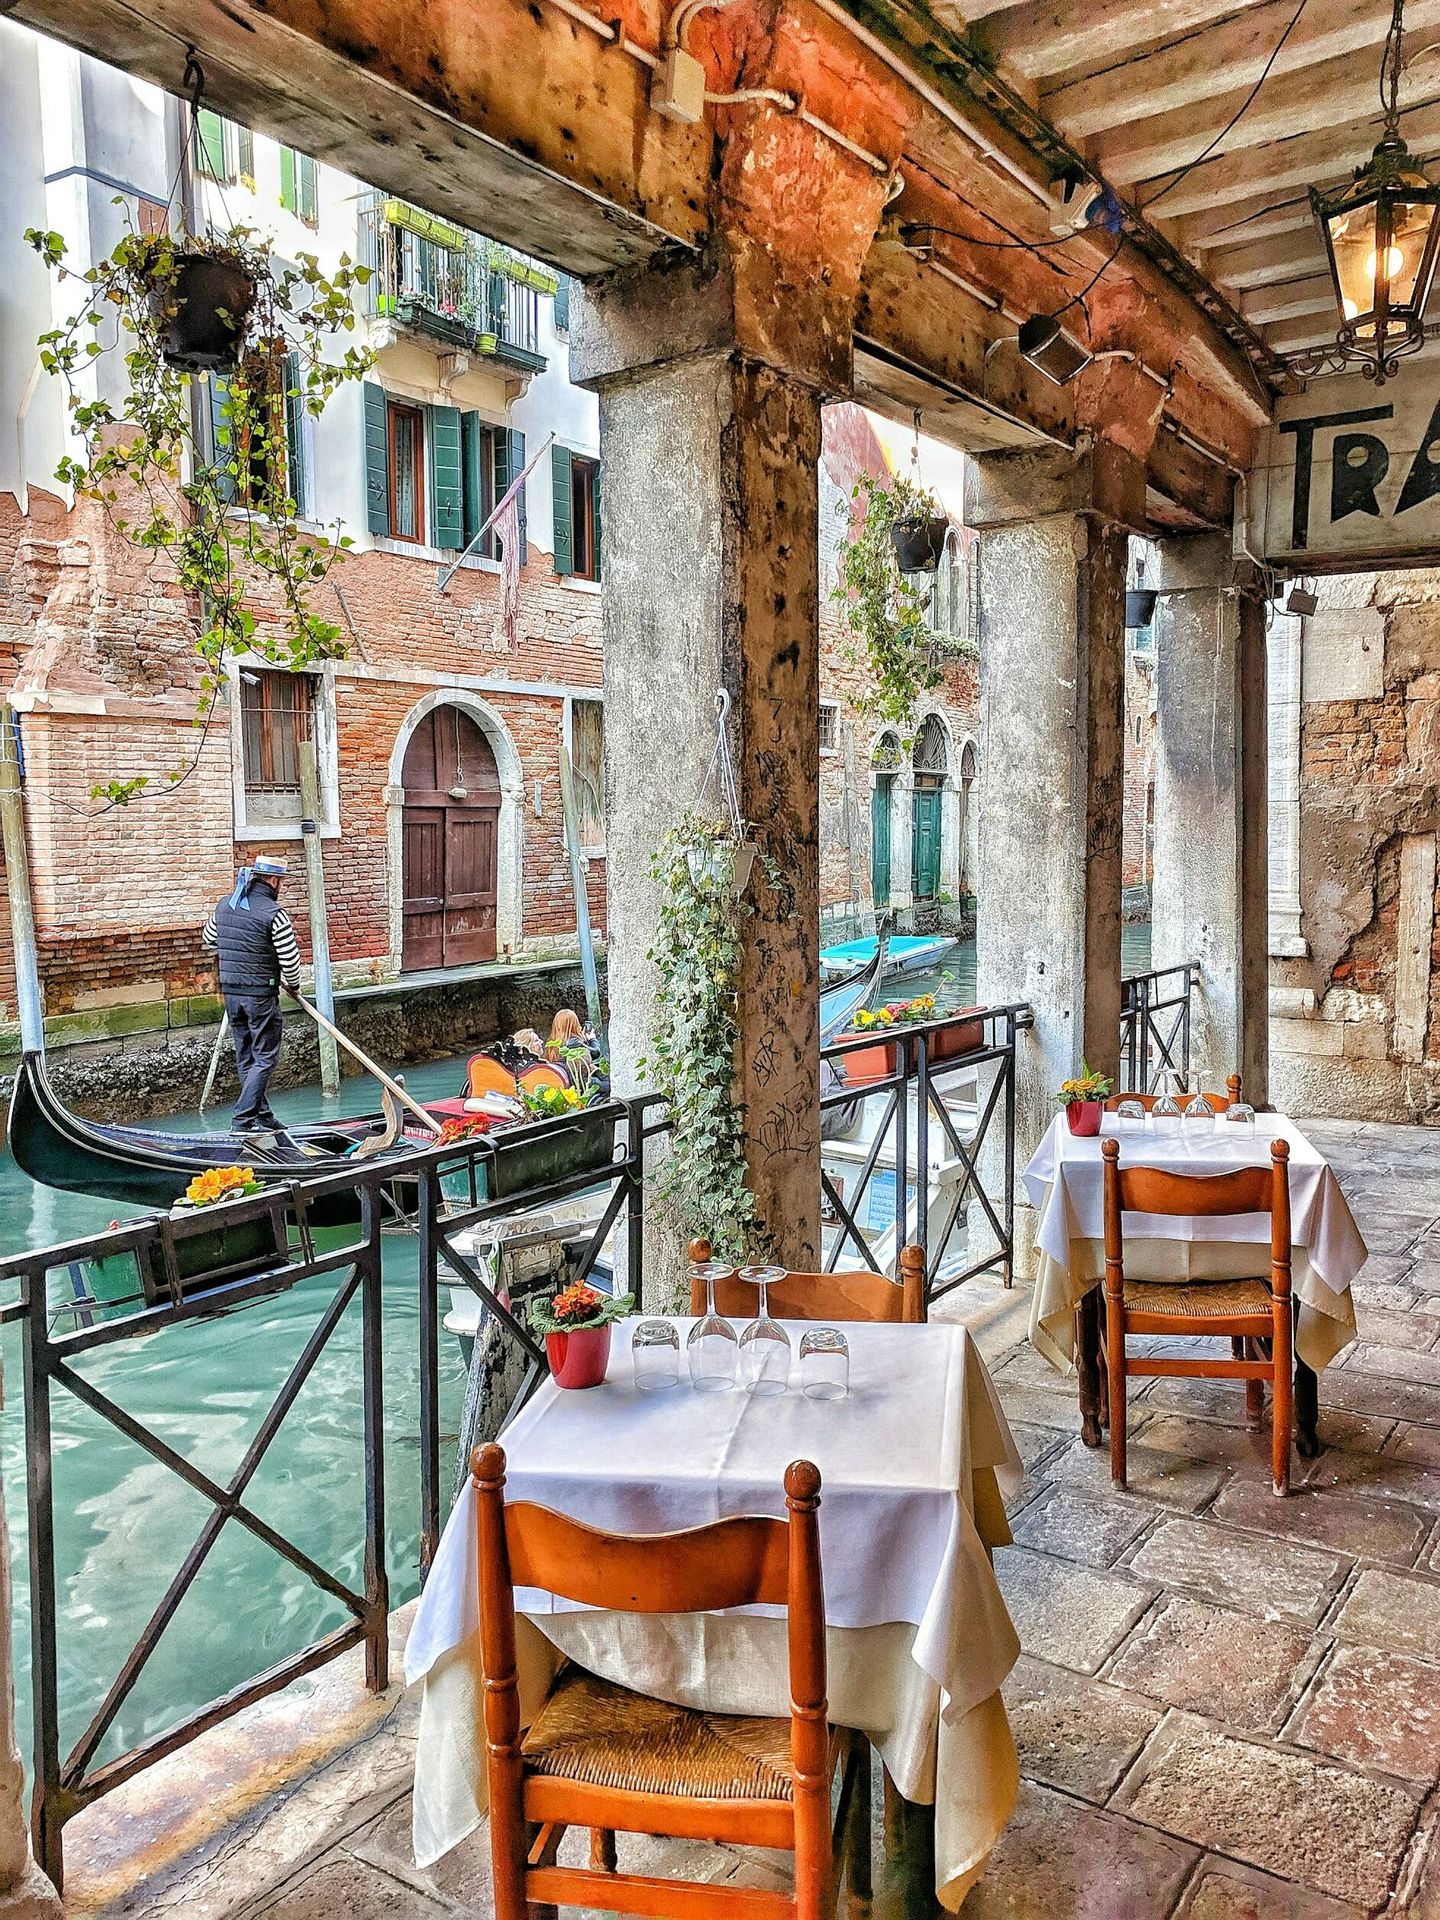 Restaurante en Venecia. (Unsplash)